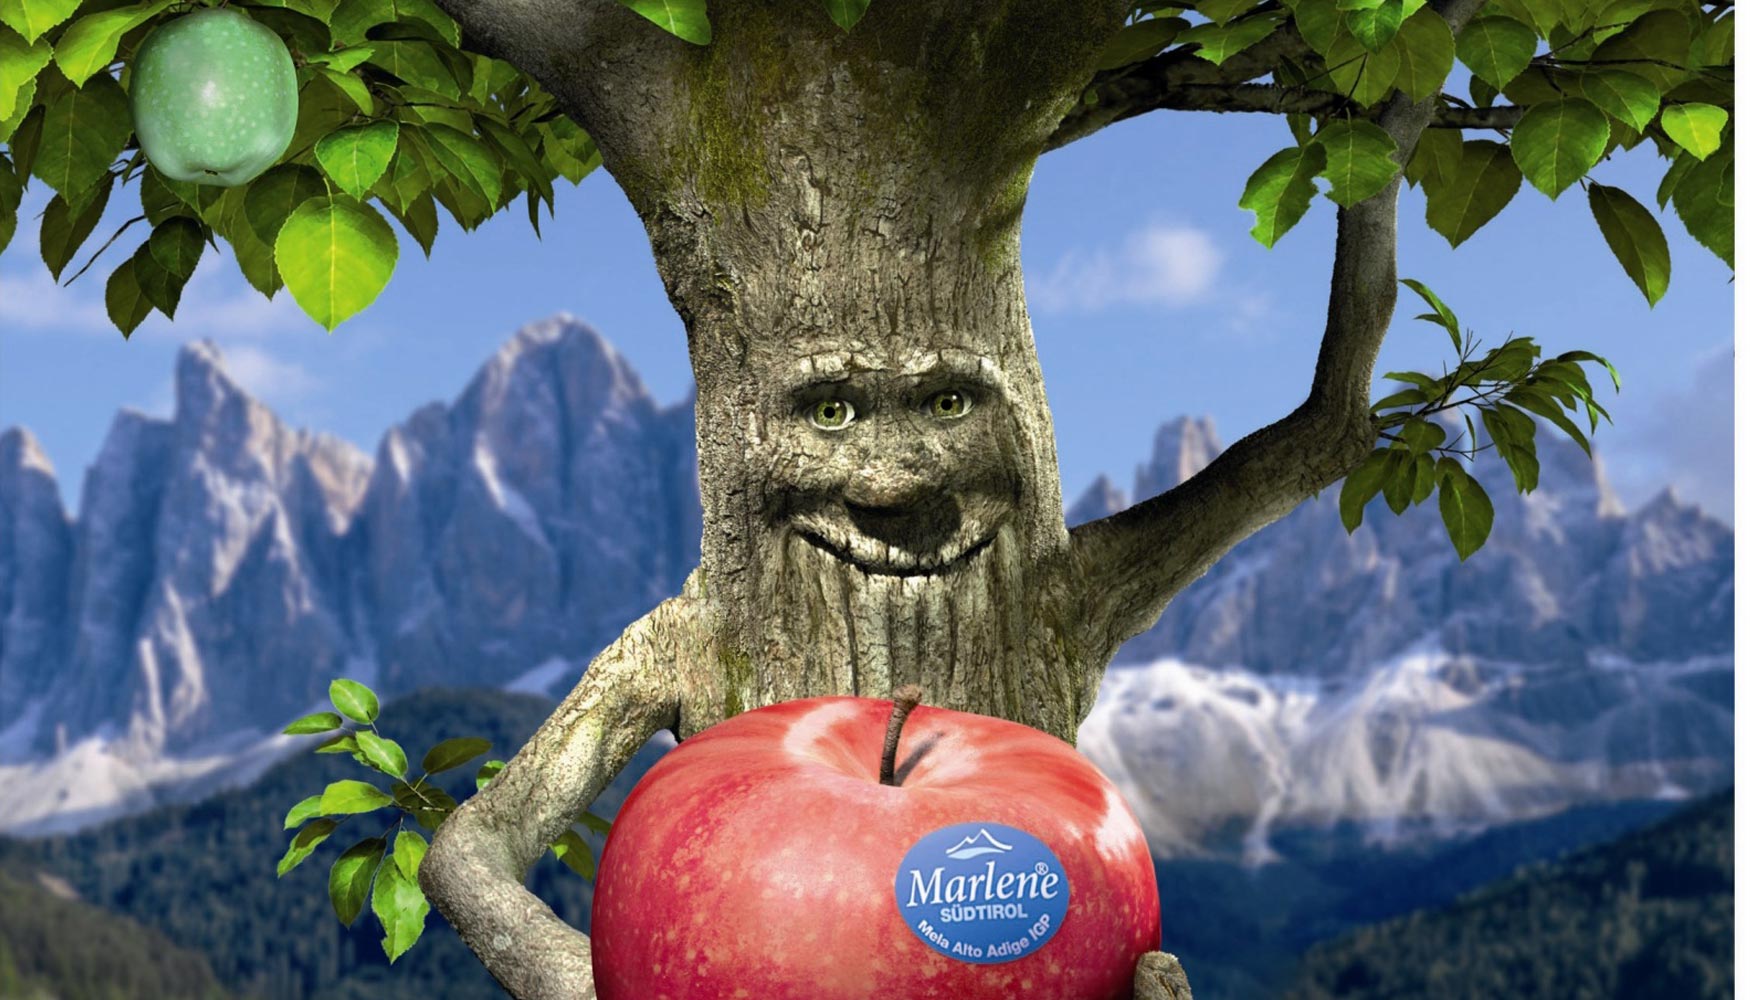 Marlene es la gran protagonista de las manzanas Club comercializadas por el consorcio surtirols VOG